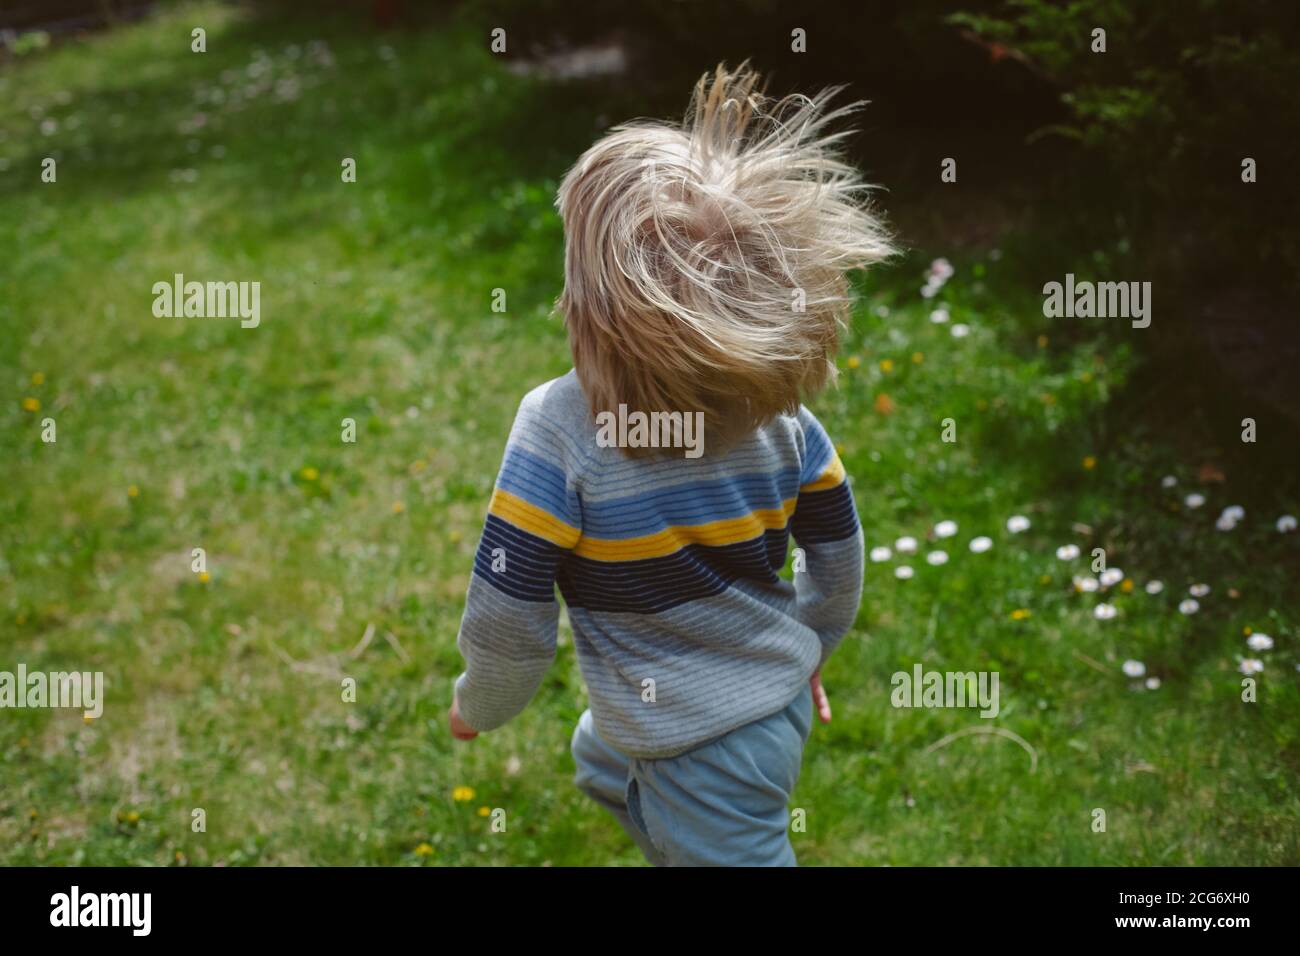 Vista trasera de un niño corriendo en un jardín Foto de stock